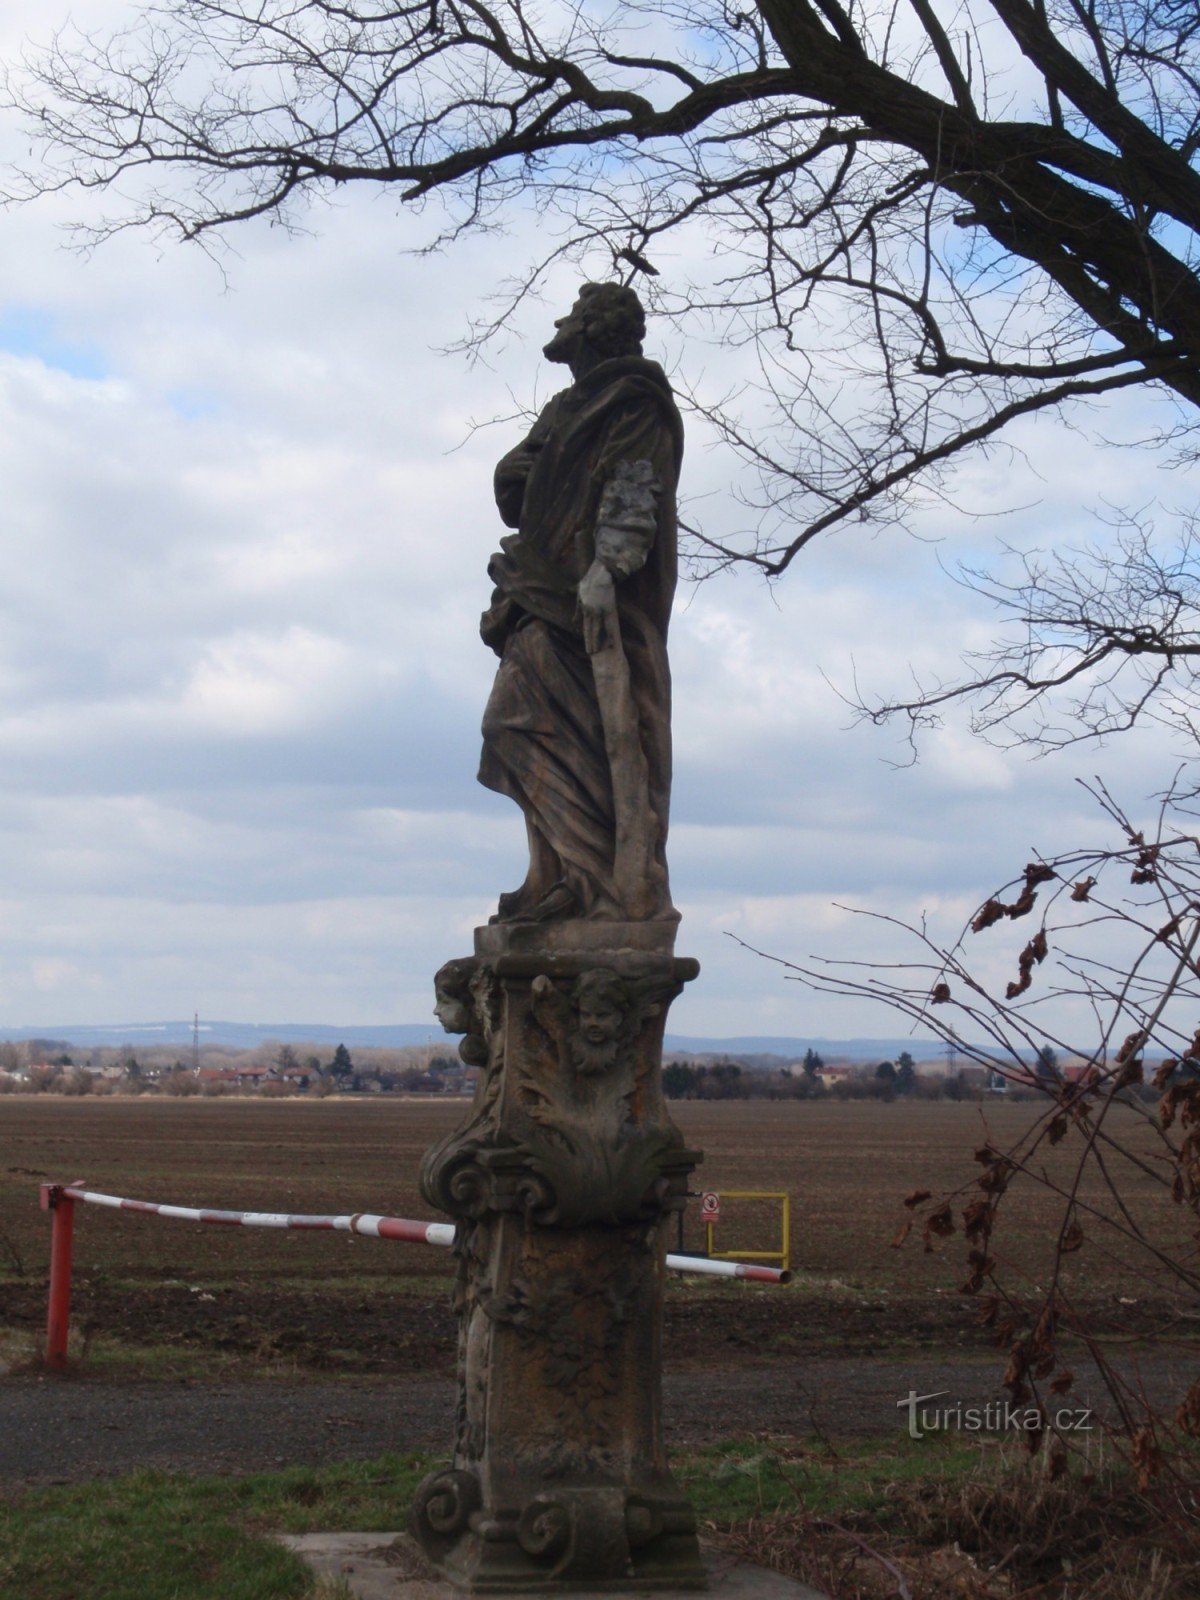 Statue af St. Judy Tadeáše nær landsbyen Samotišky